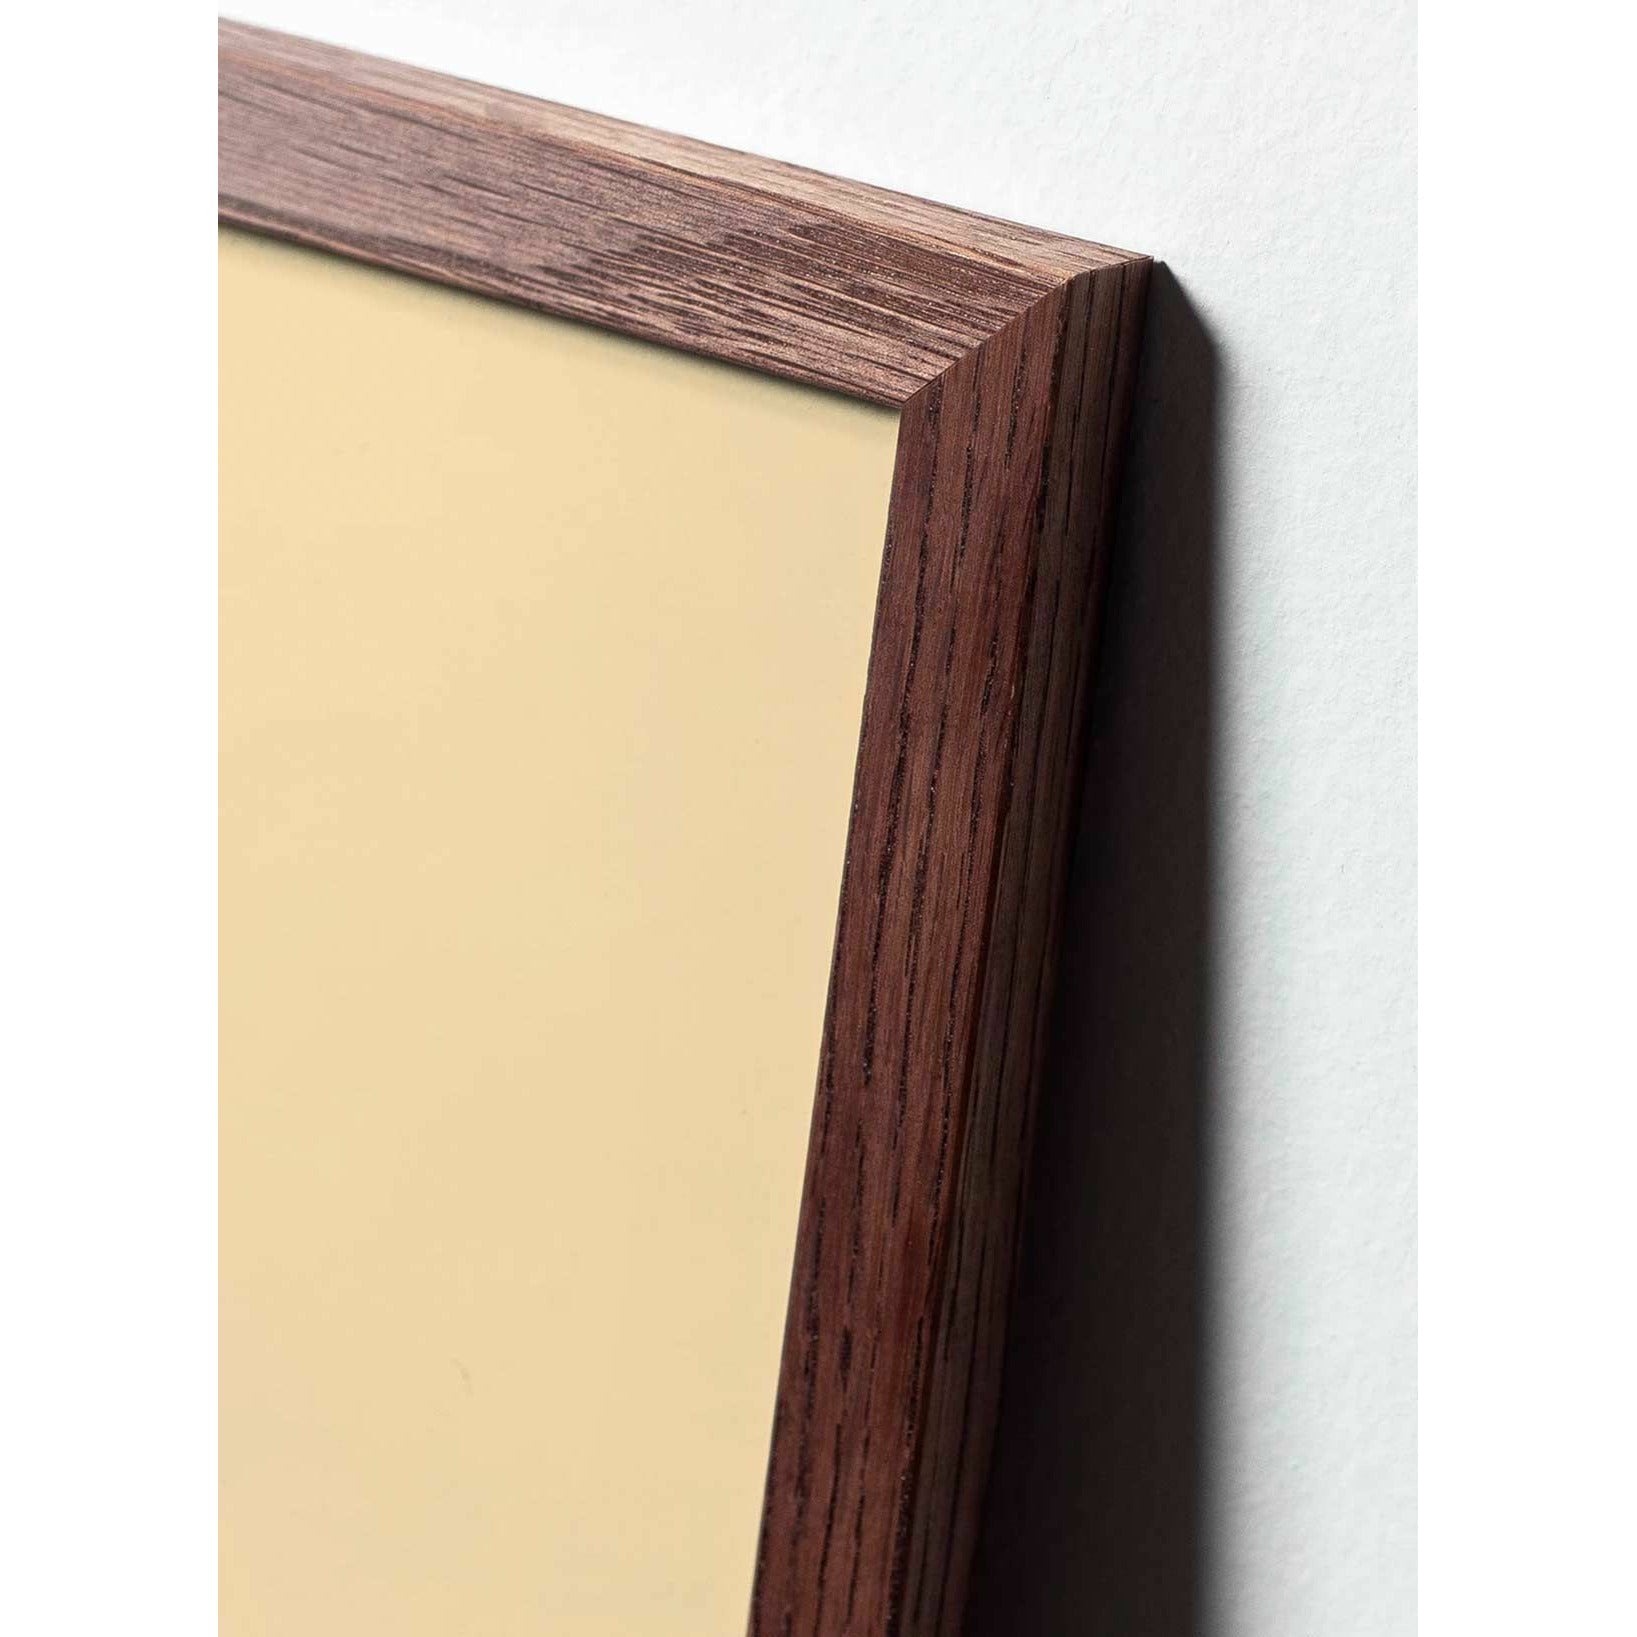 Póster de diseño de diseño de oso de peluche, marco hecho de madera oscura 50x70 cm, gris